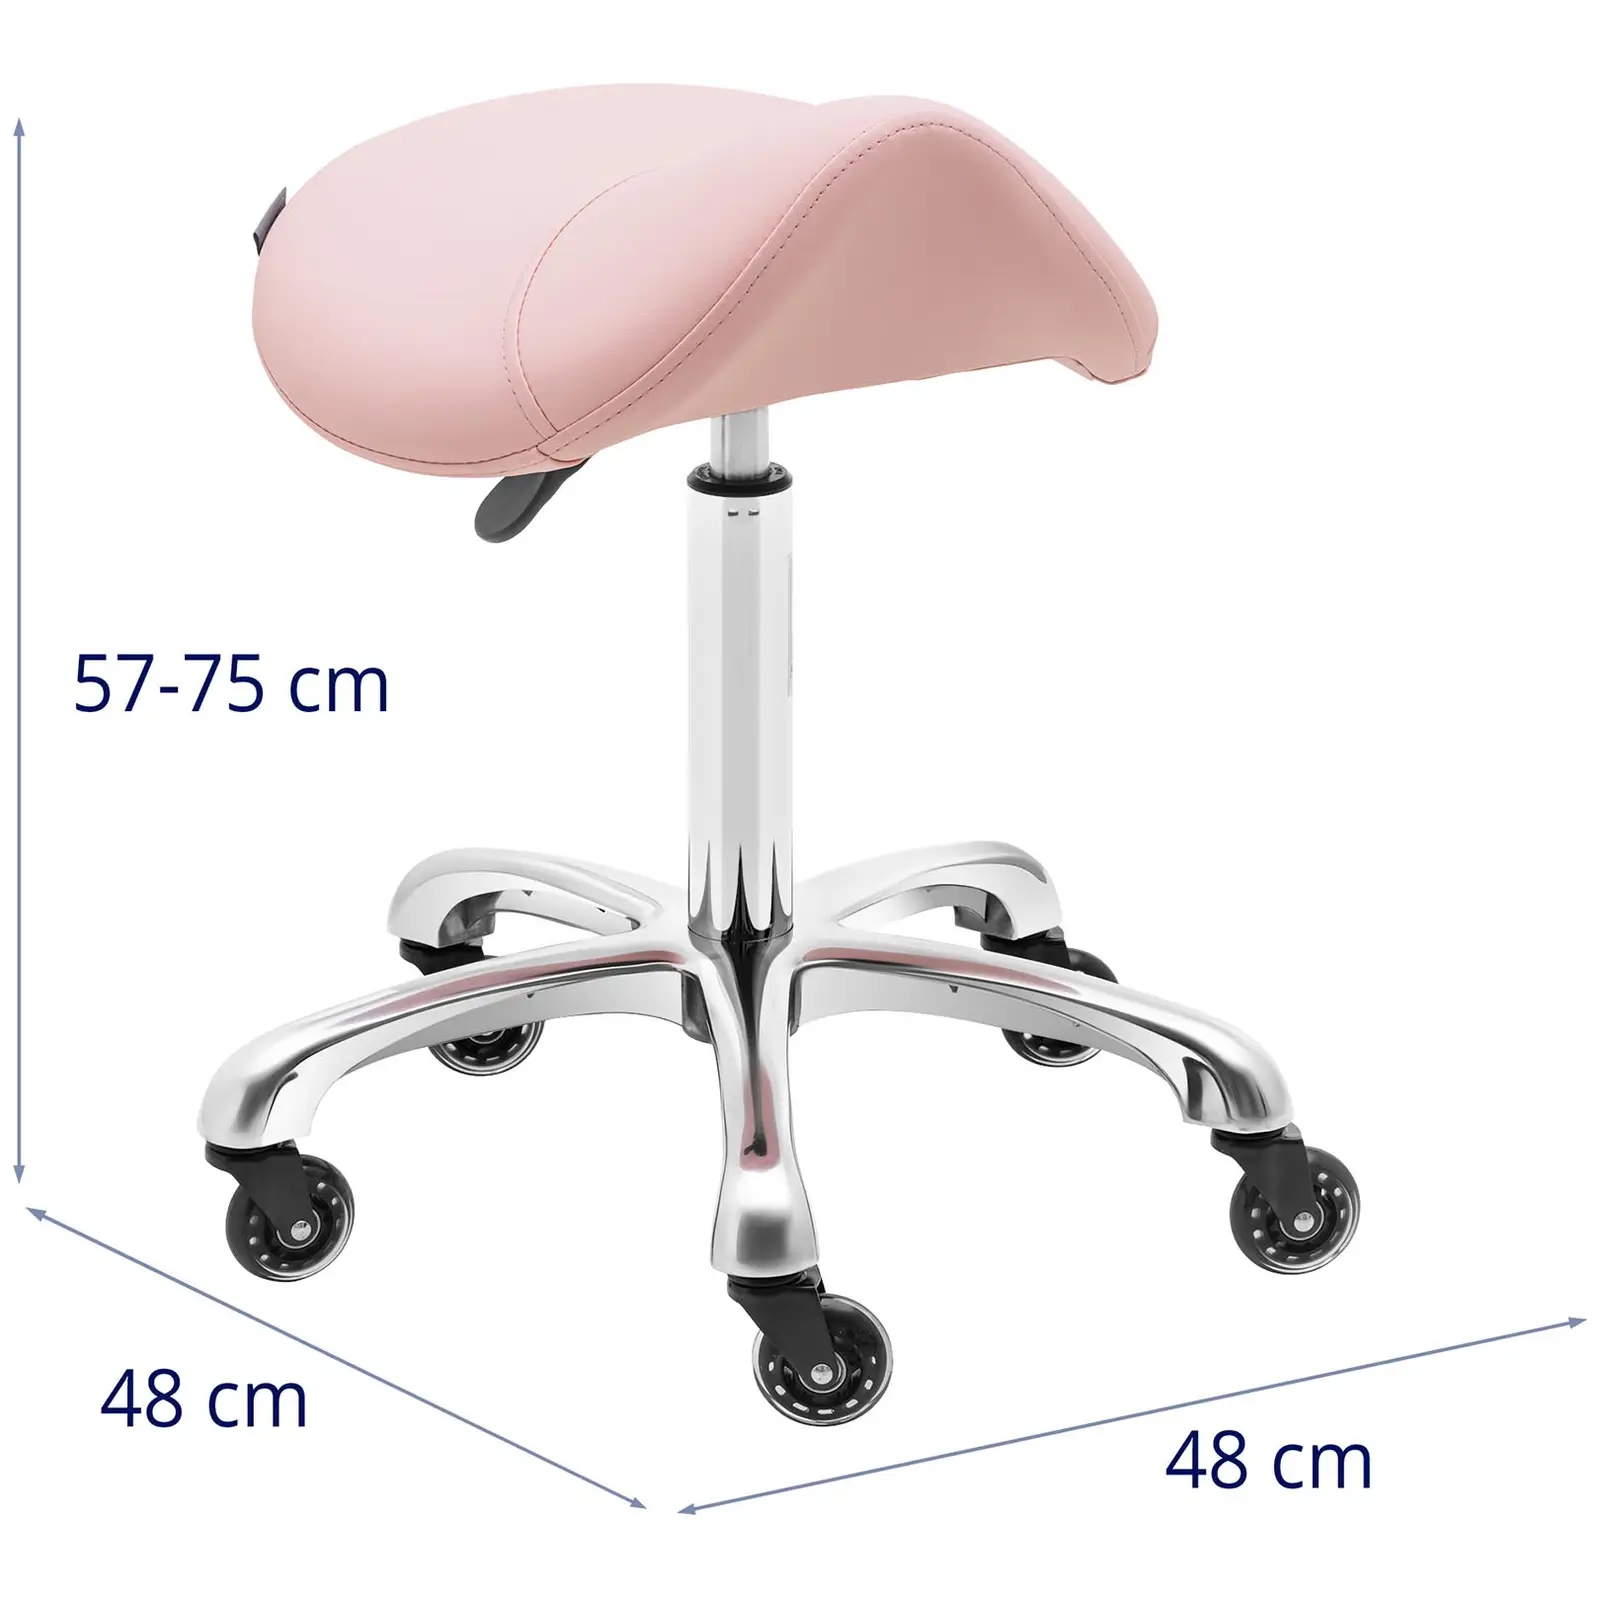 Sadelstol – 570 - 750 mm – 150kg – Powder pinkPowder pink